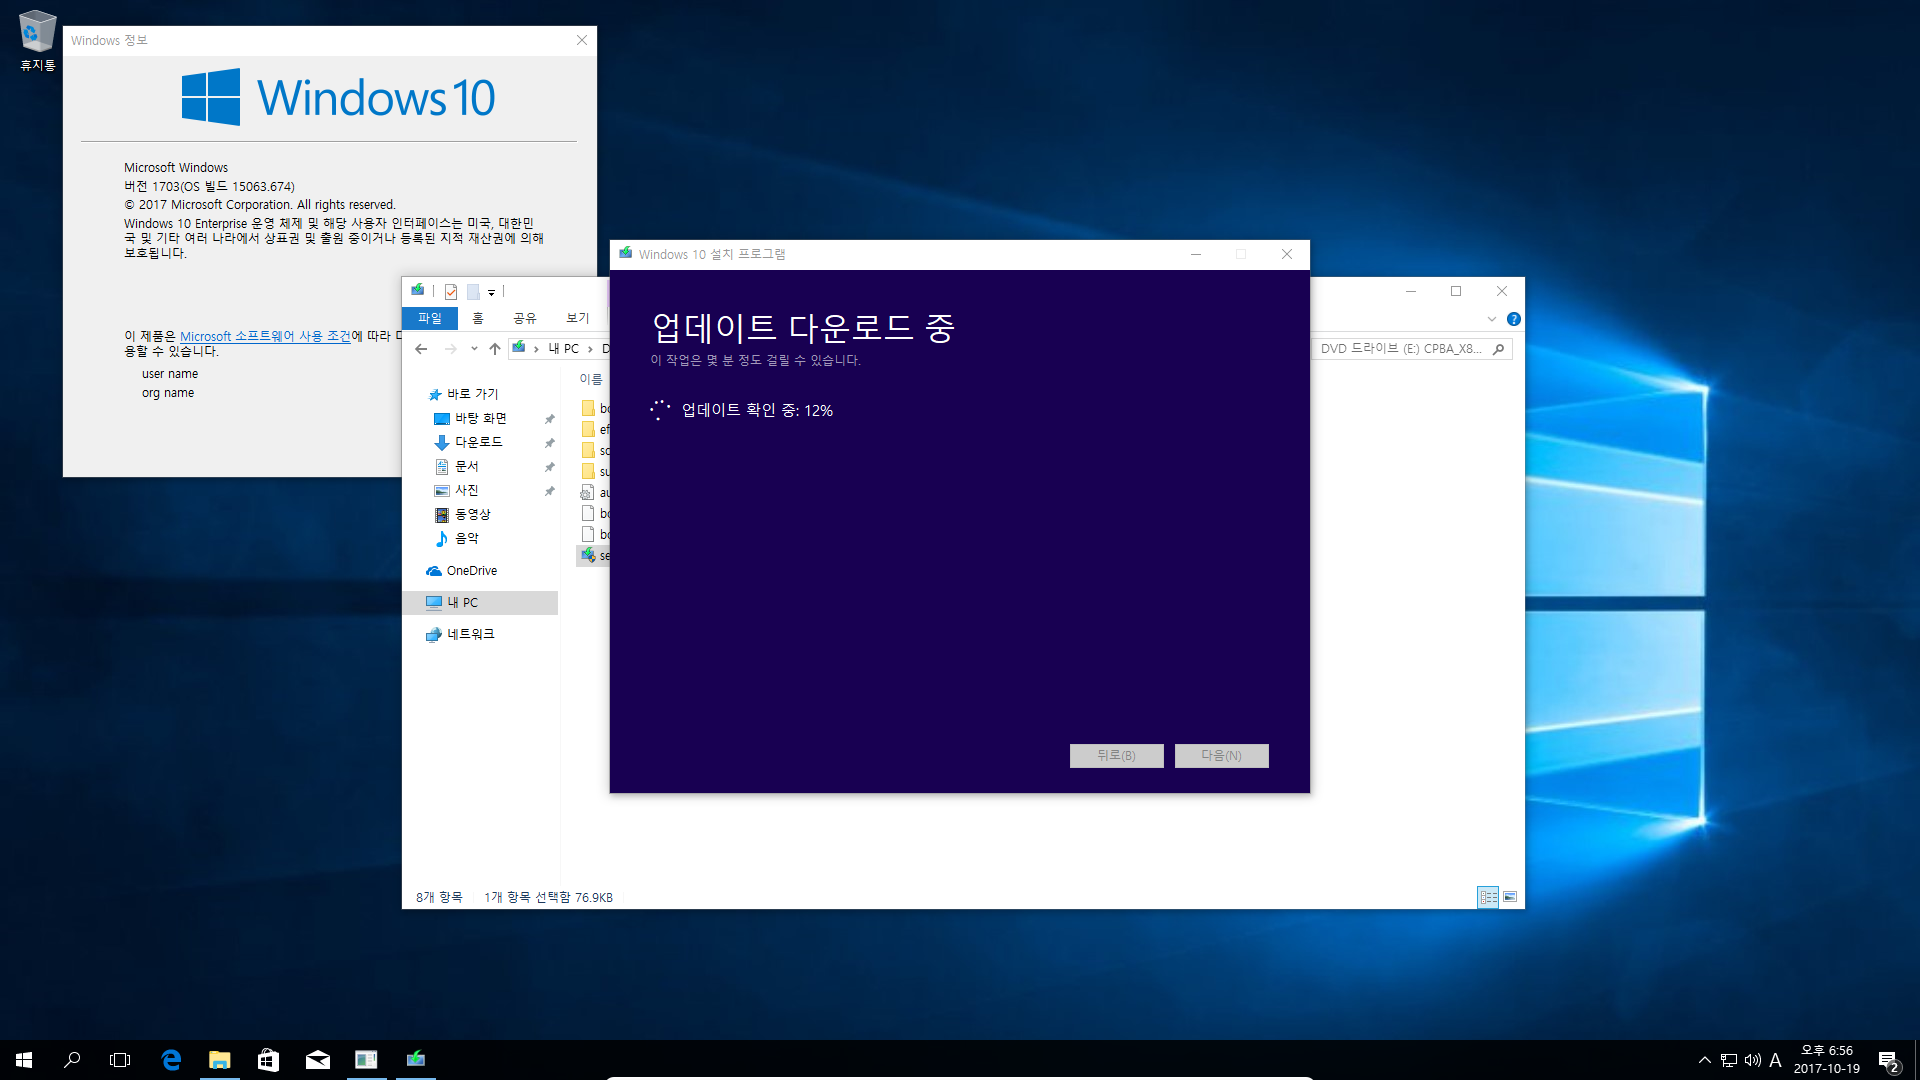 Windows 10 버전1709 엔터프라이즈로 업그레이드 테스트 - 버전1703 에서 - ISO 더블클릭 또는 엔터로 탑재 후에 setup.exe 실행으로 업그레이드-오잉 뭔가 다운로드 하네요 2017-10-19_185646.png